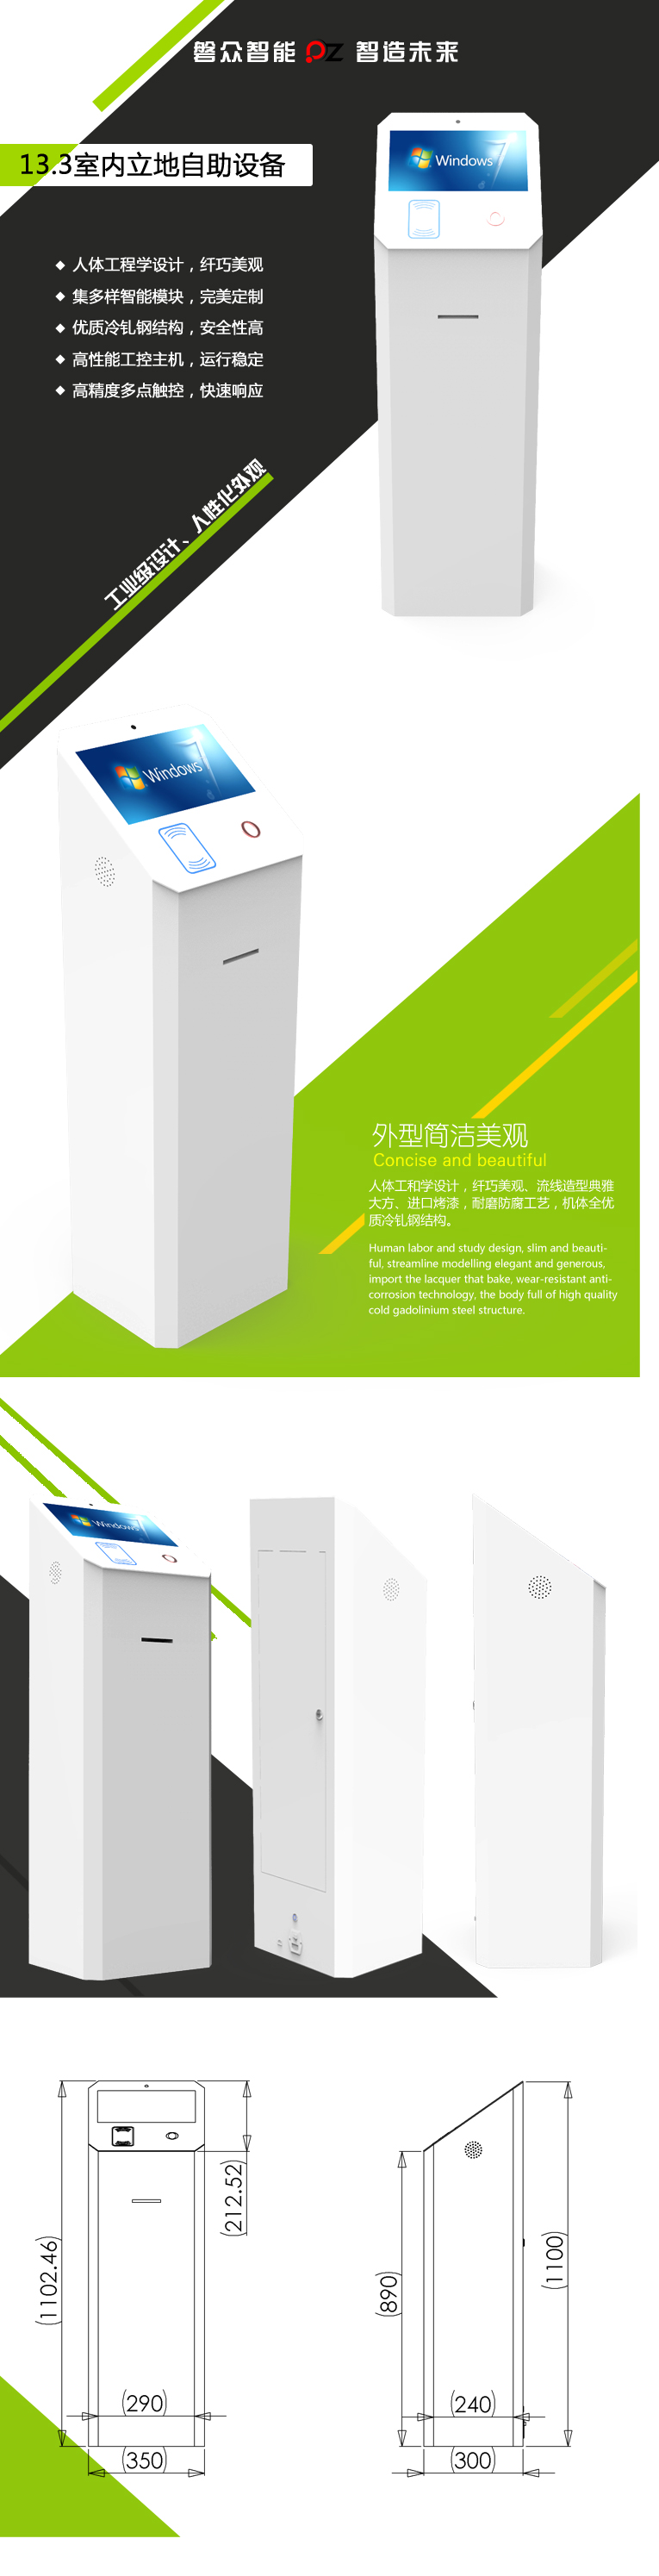 13.3寸立式自助刷卡服务终端/一体机-广州磐众智能科技有限公司